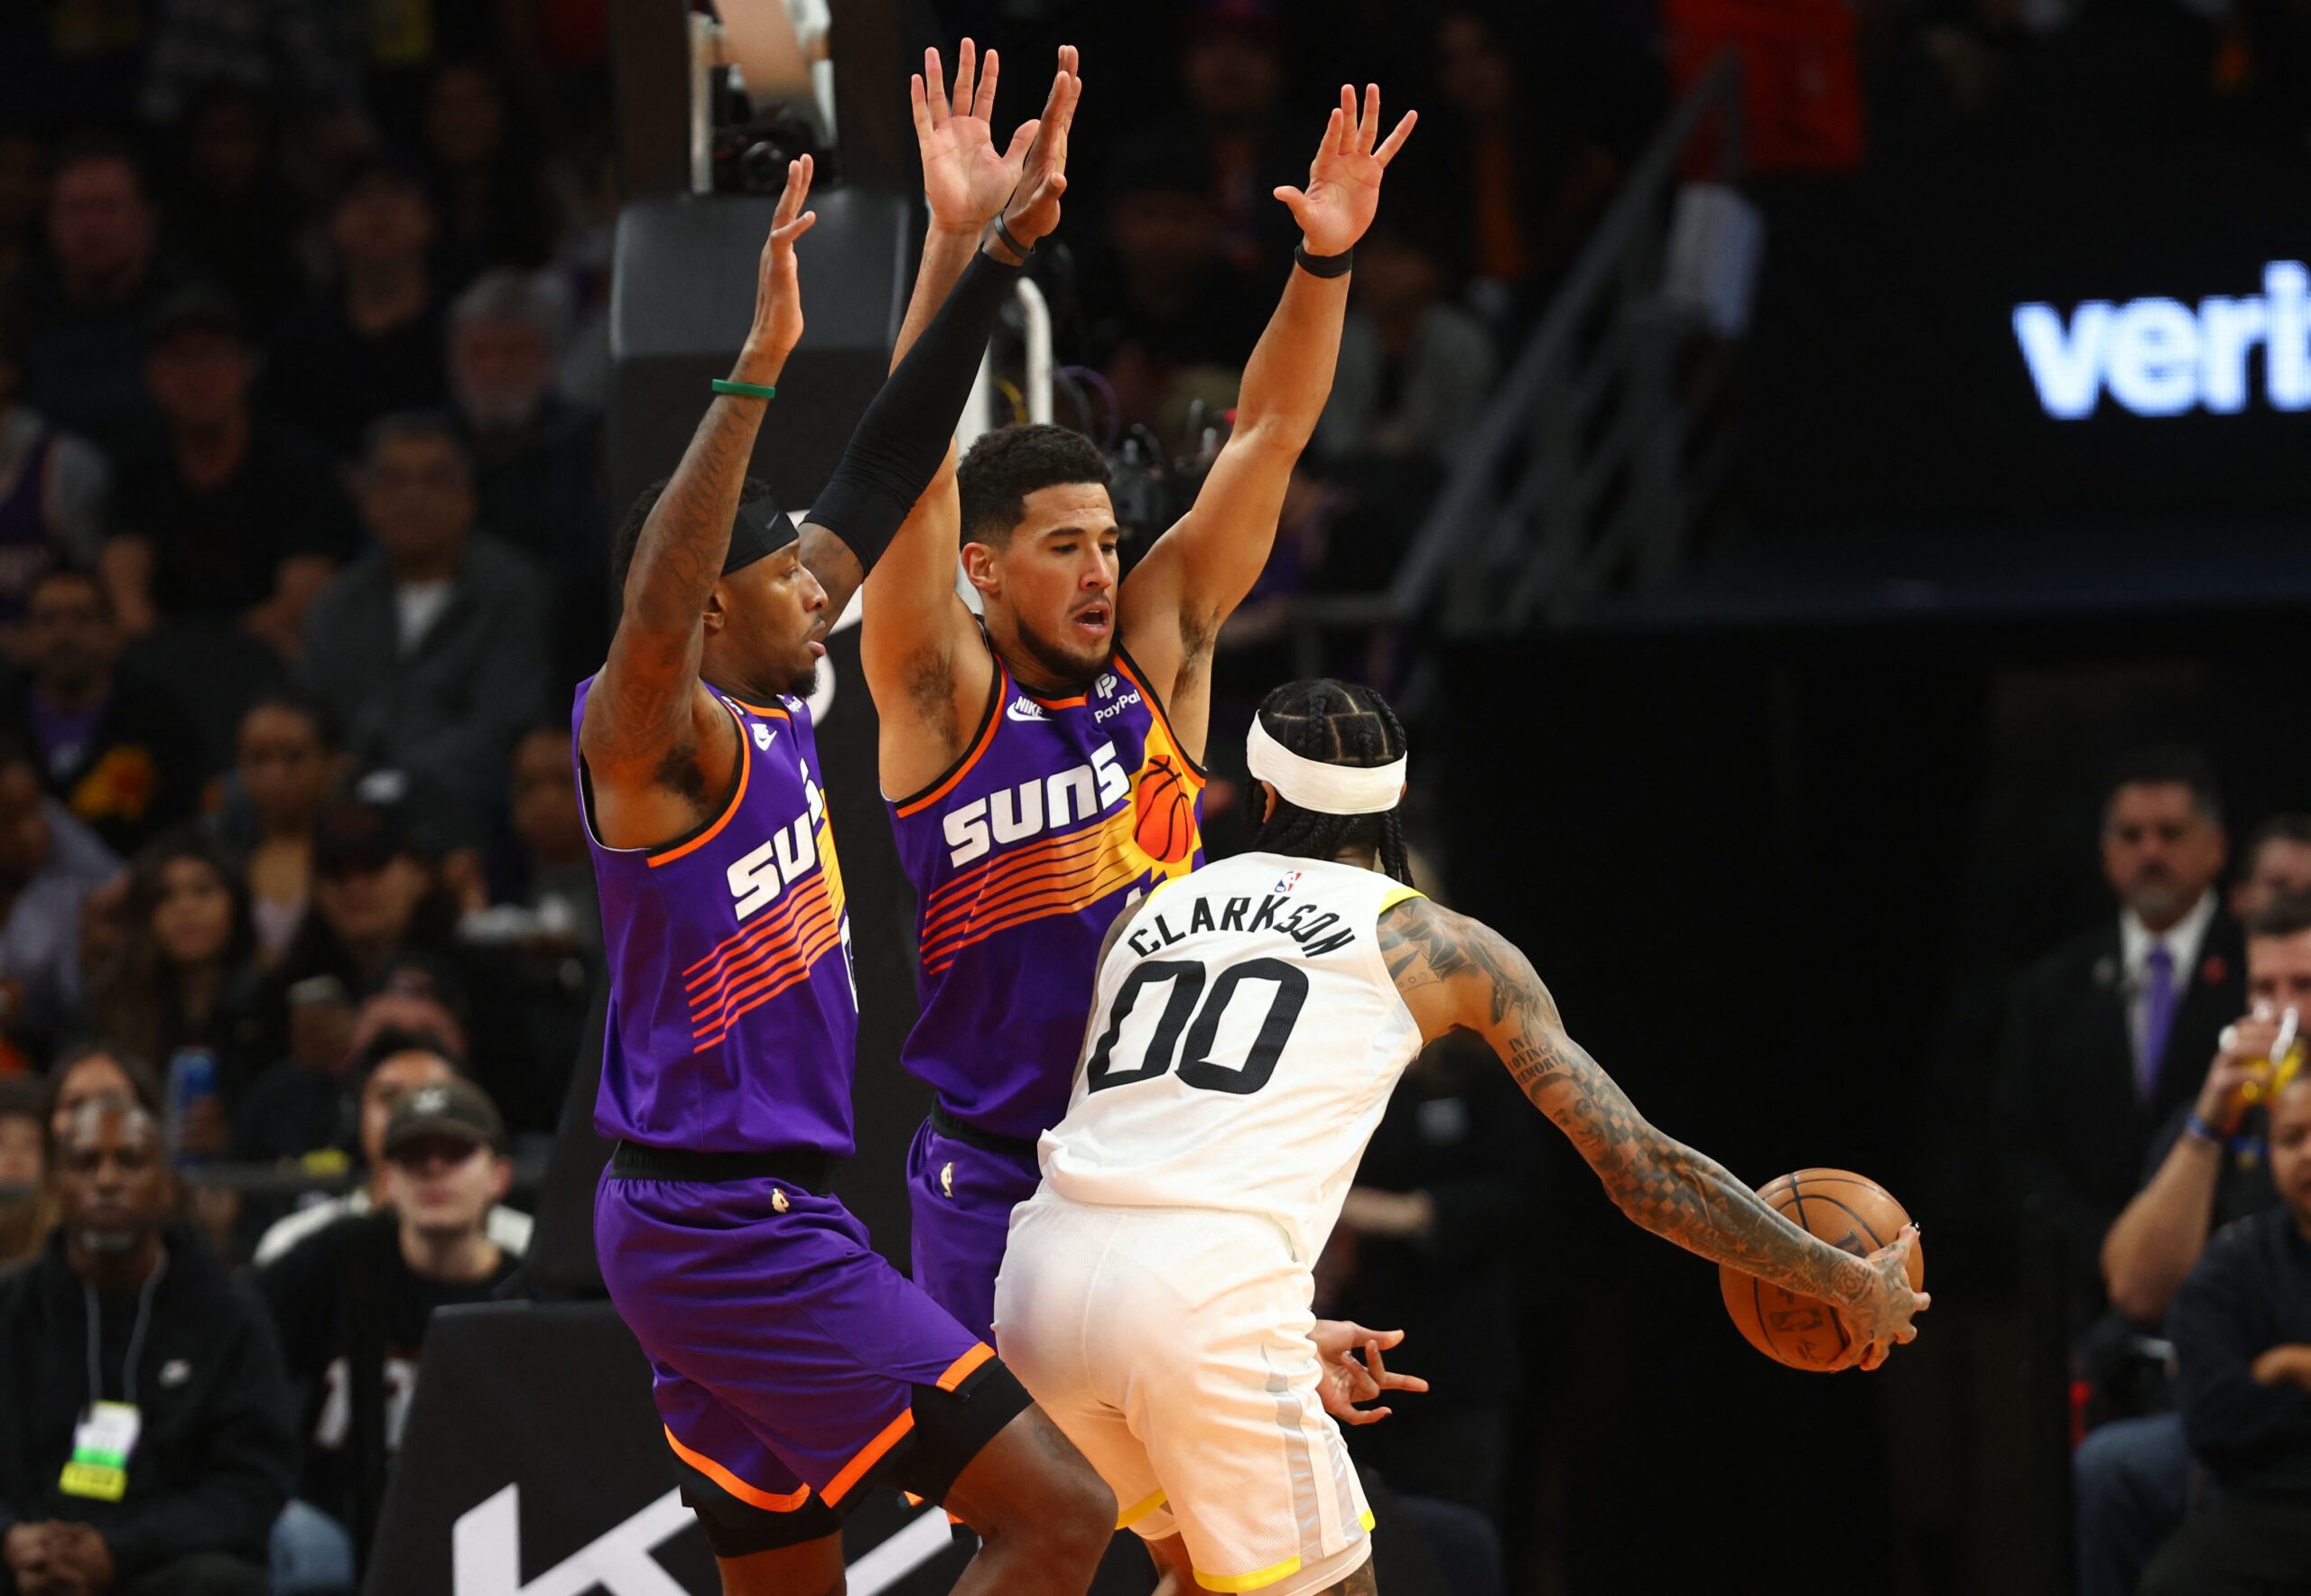 Ayton has 29 points, 21 rebounds as Suns edge Jazz 113-112